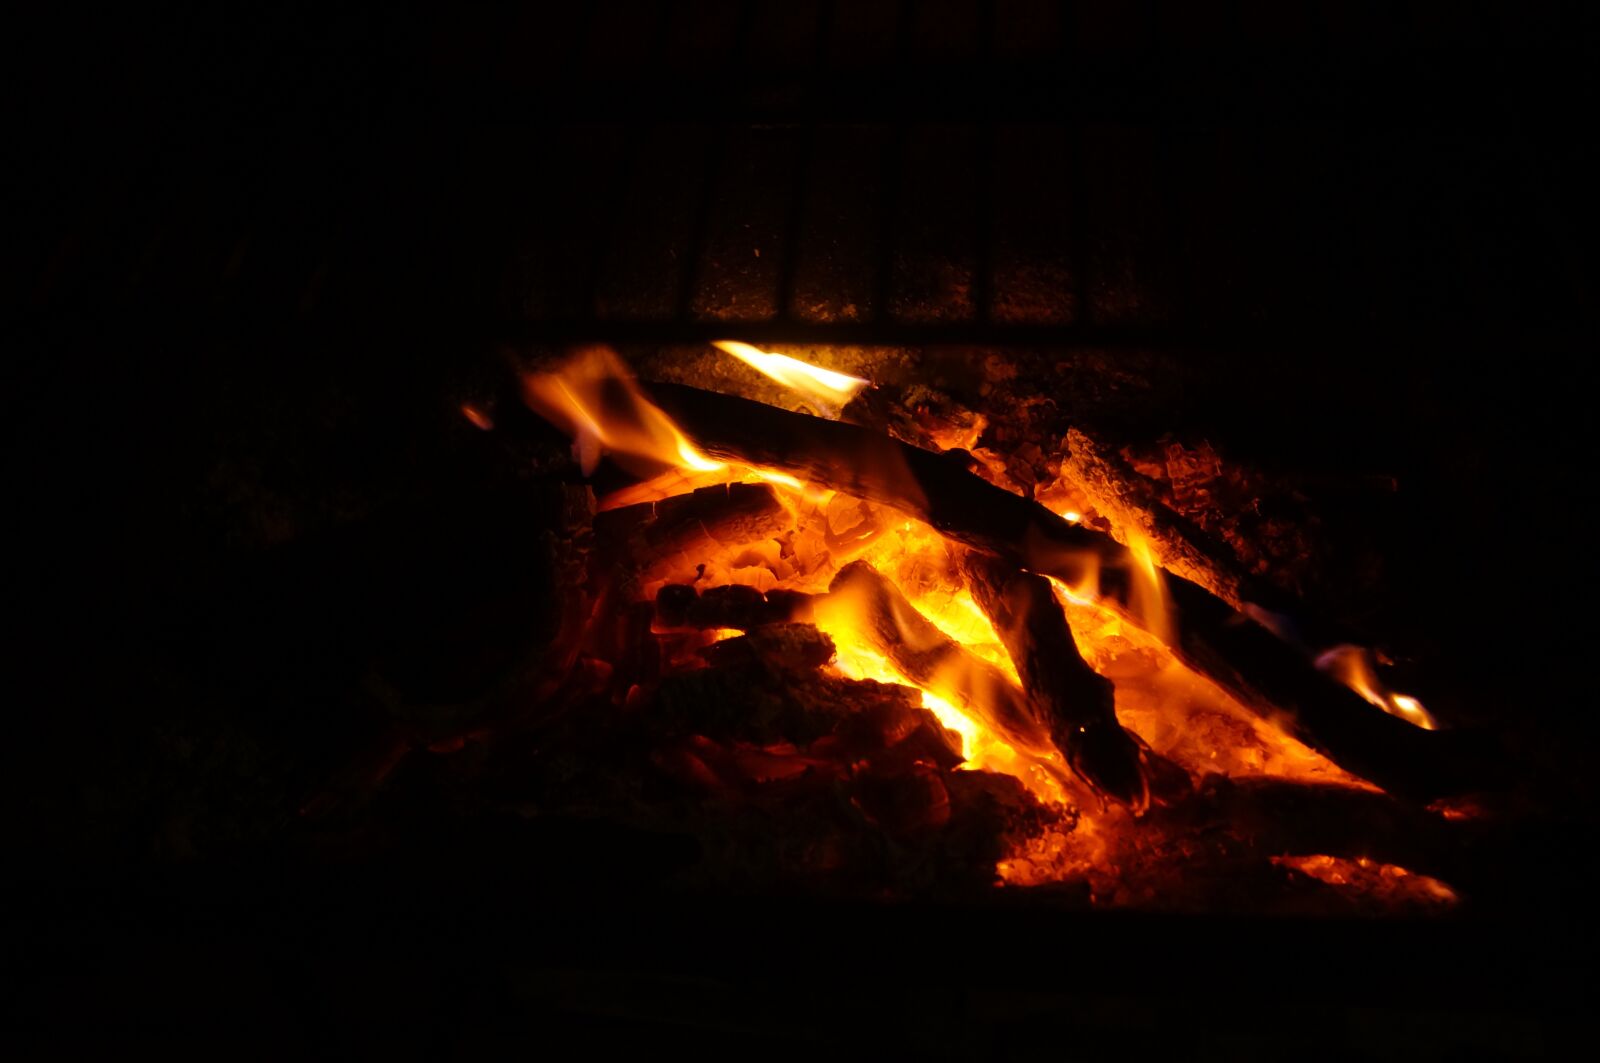 Sony SLT-A37 sample photo. Fire, fireplace, wa photography